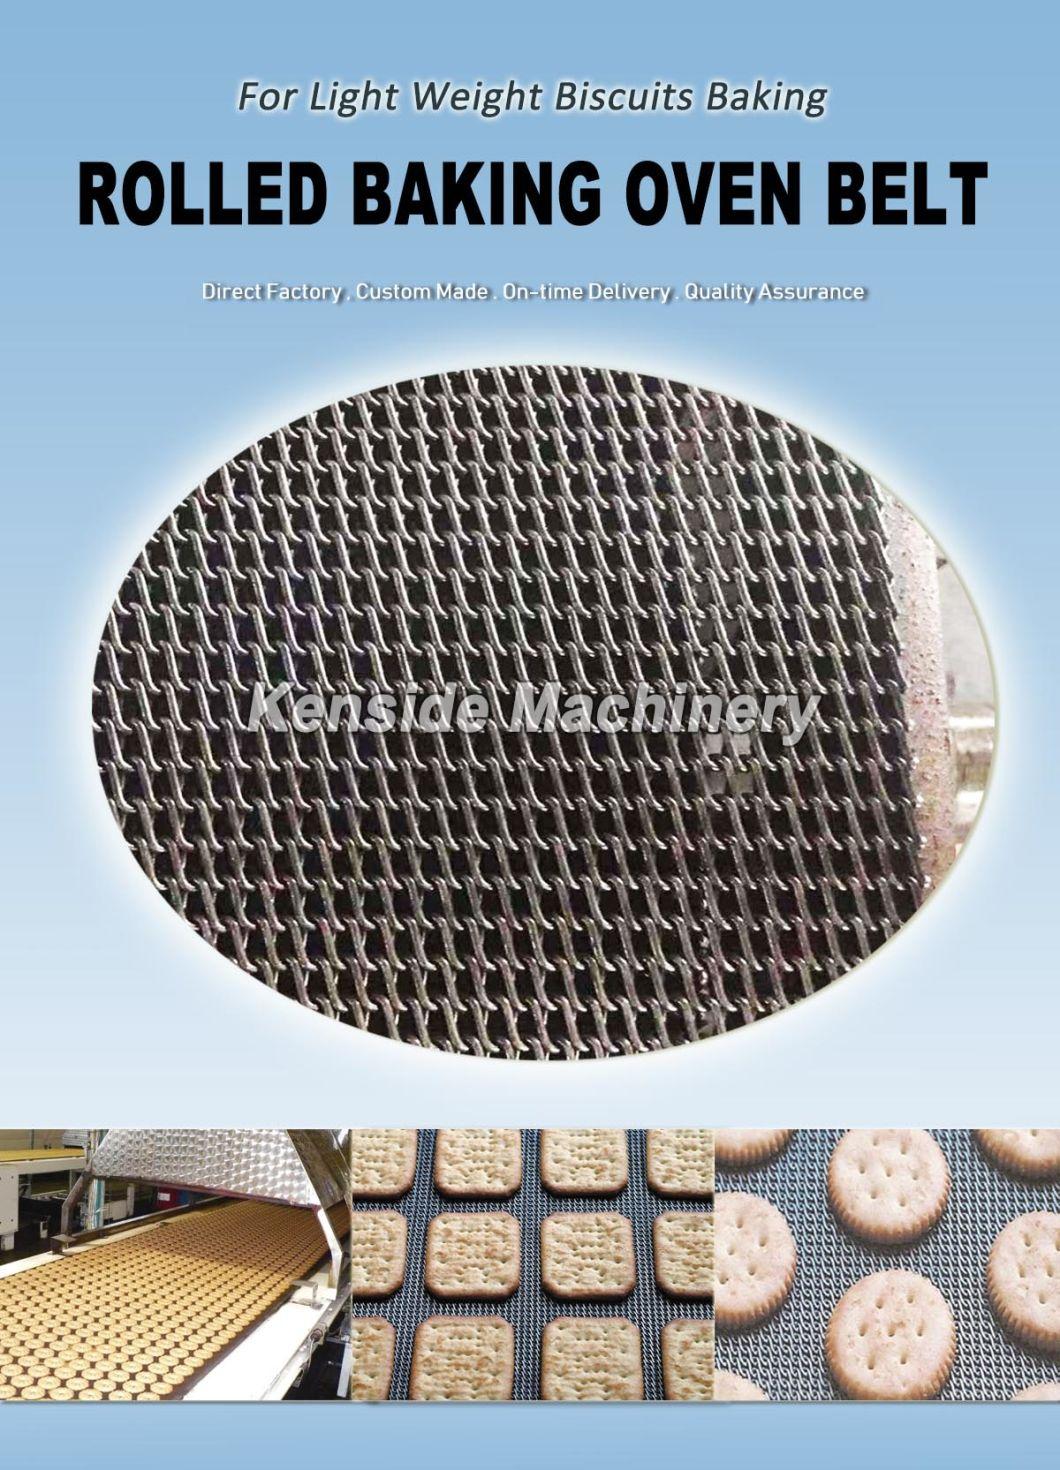 Baking Industry Used Belt, Baking Oven Belt, Z47r (F4015)